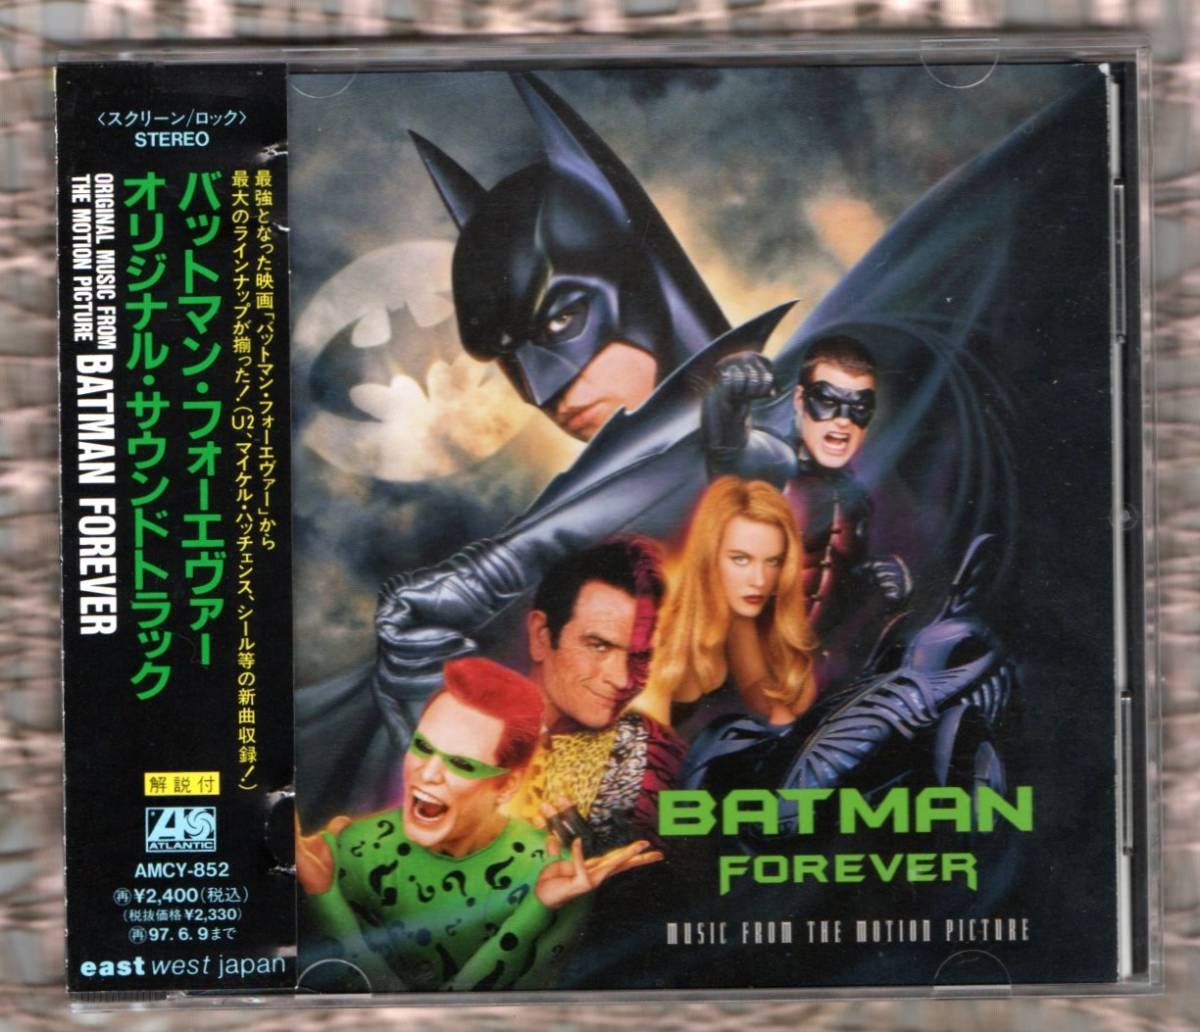 Ω プロモーション用 非売品 CD 映画 バットマン フォーエバー BATMAN FOREVER サウンドトラック 国内盤 CD/ヴァルキルマー ジムキャリー_※プラケースは交換済みです。